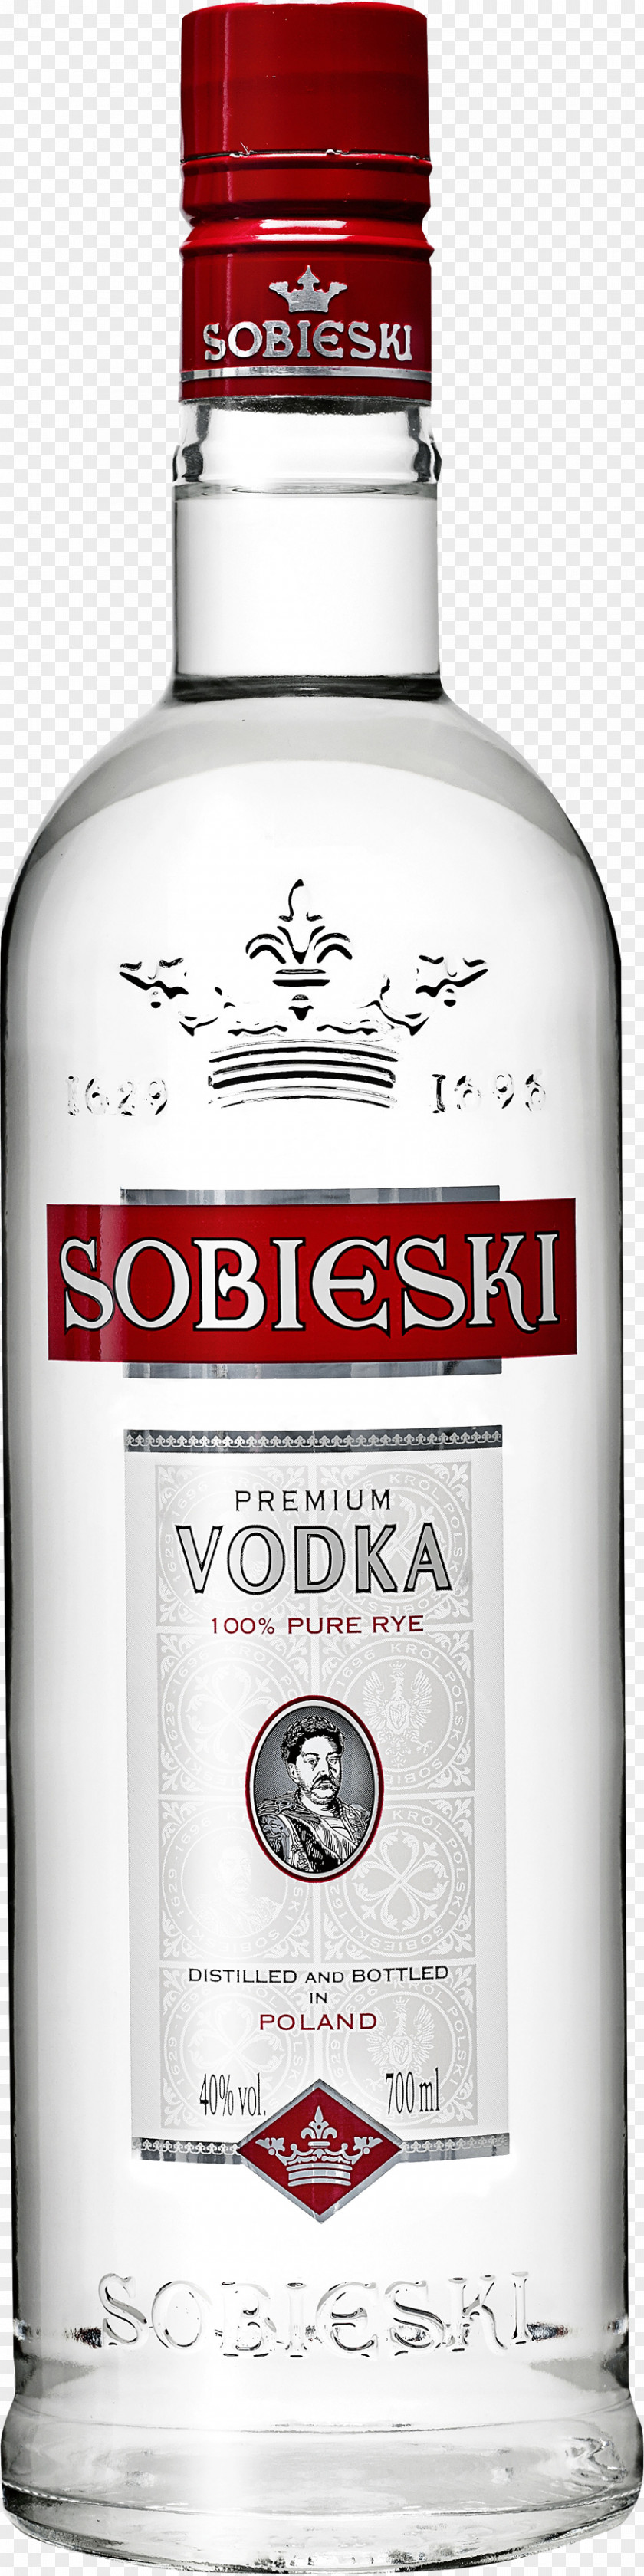 Vodka Image Distilled Beverage Polish Cuisine Chopin Sobieski PNG